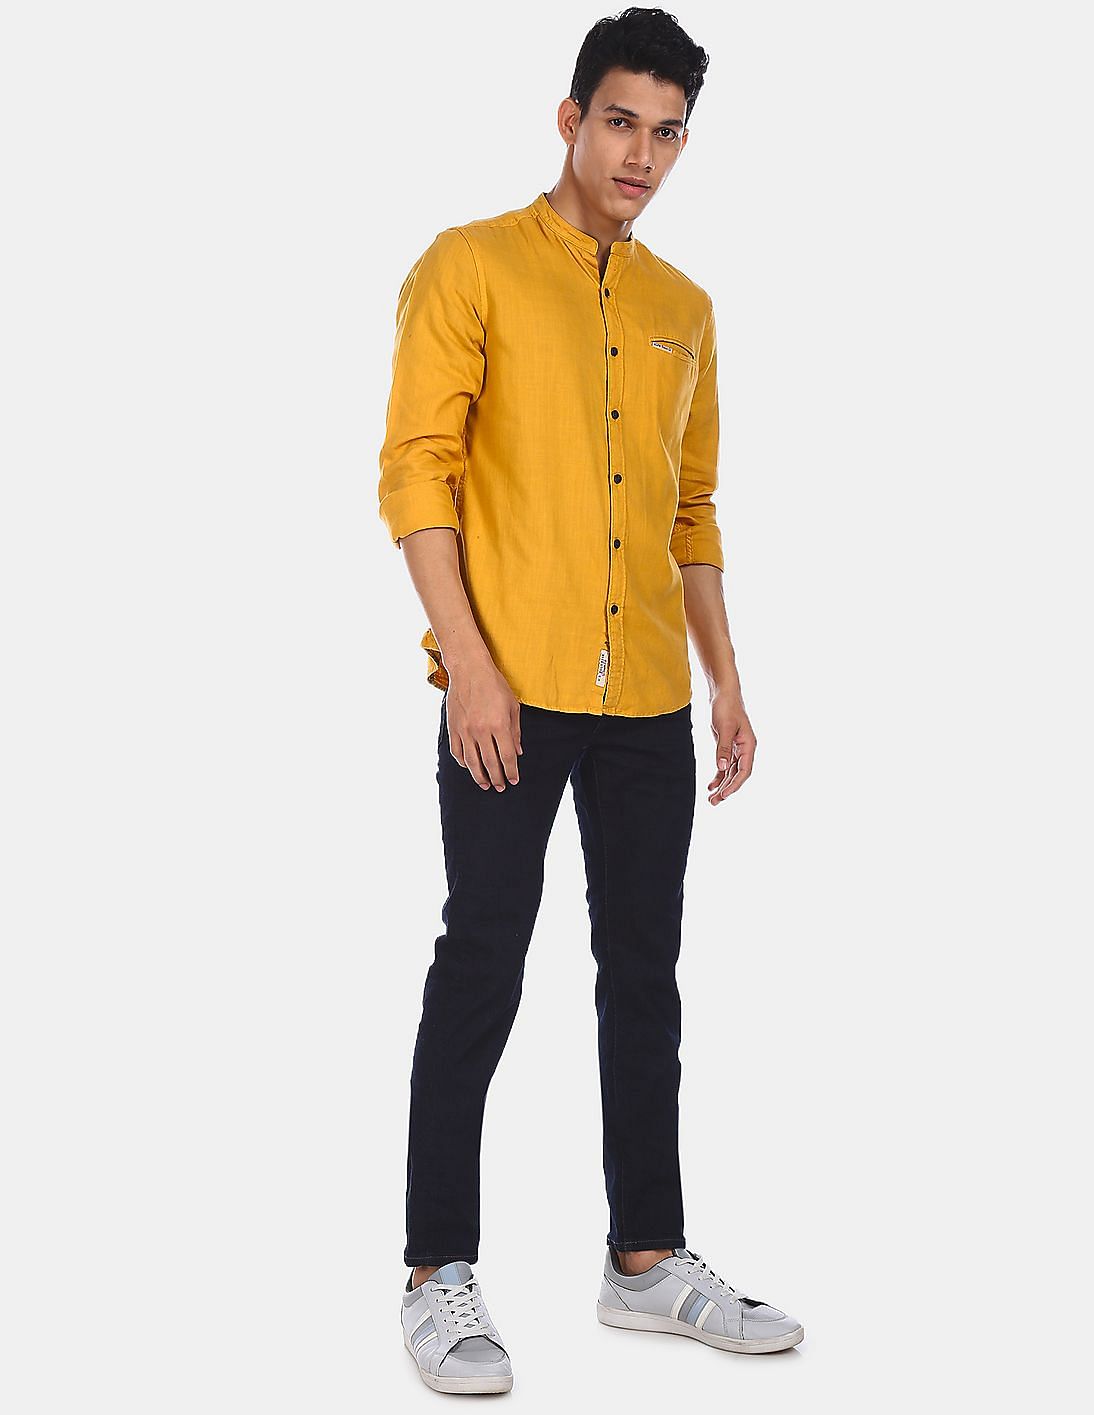 mustard yellow shirt mens